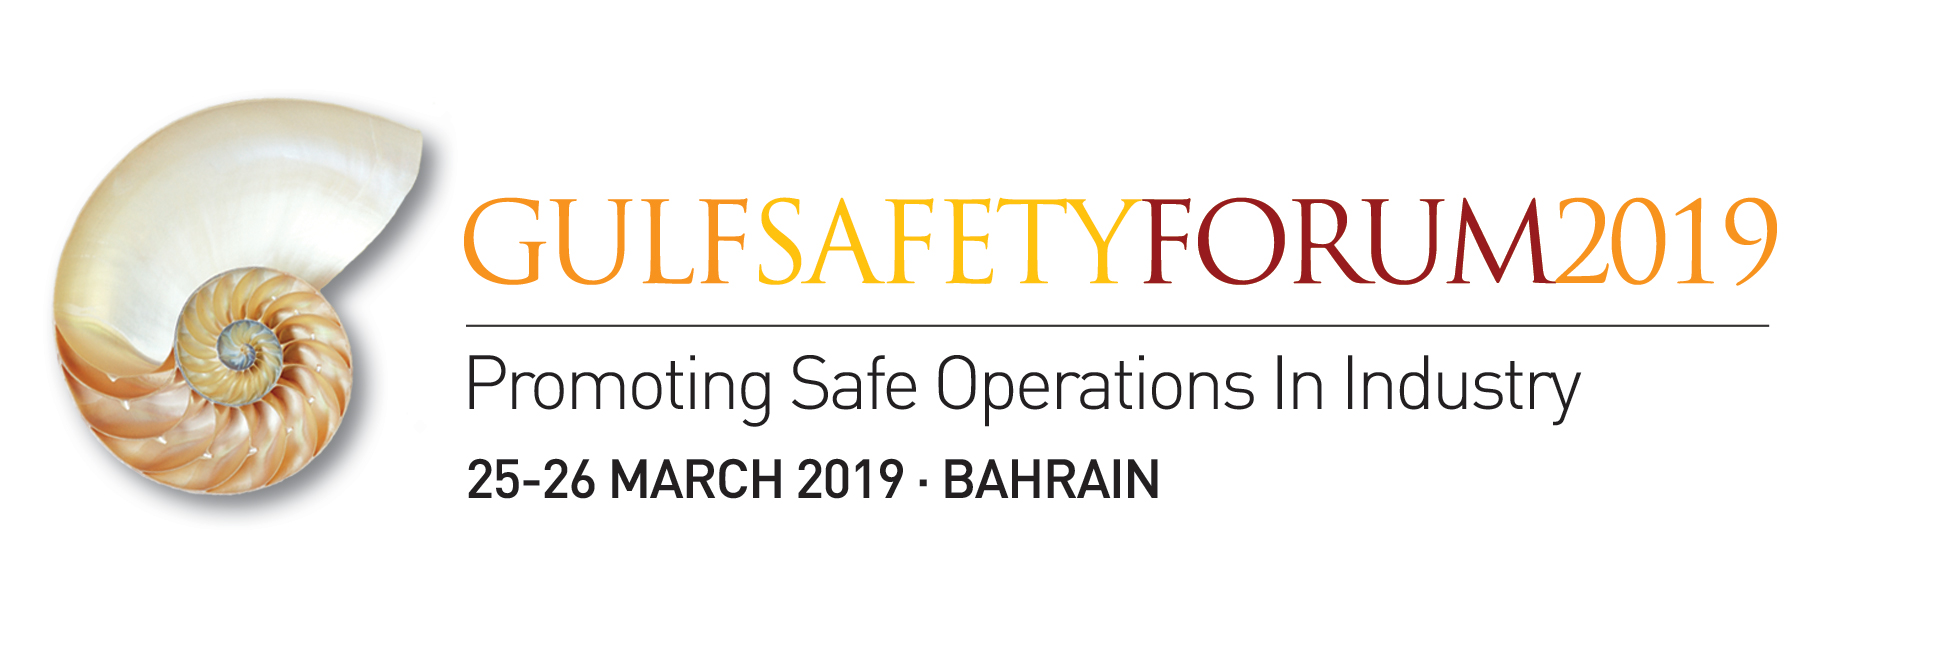 Gulf Safety Forum 2019